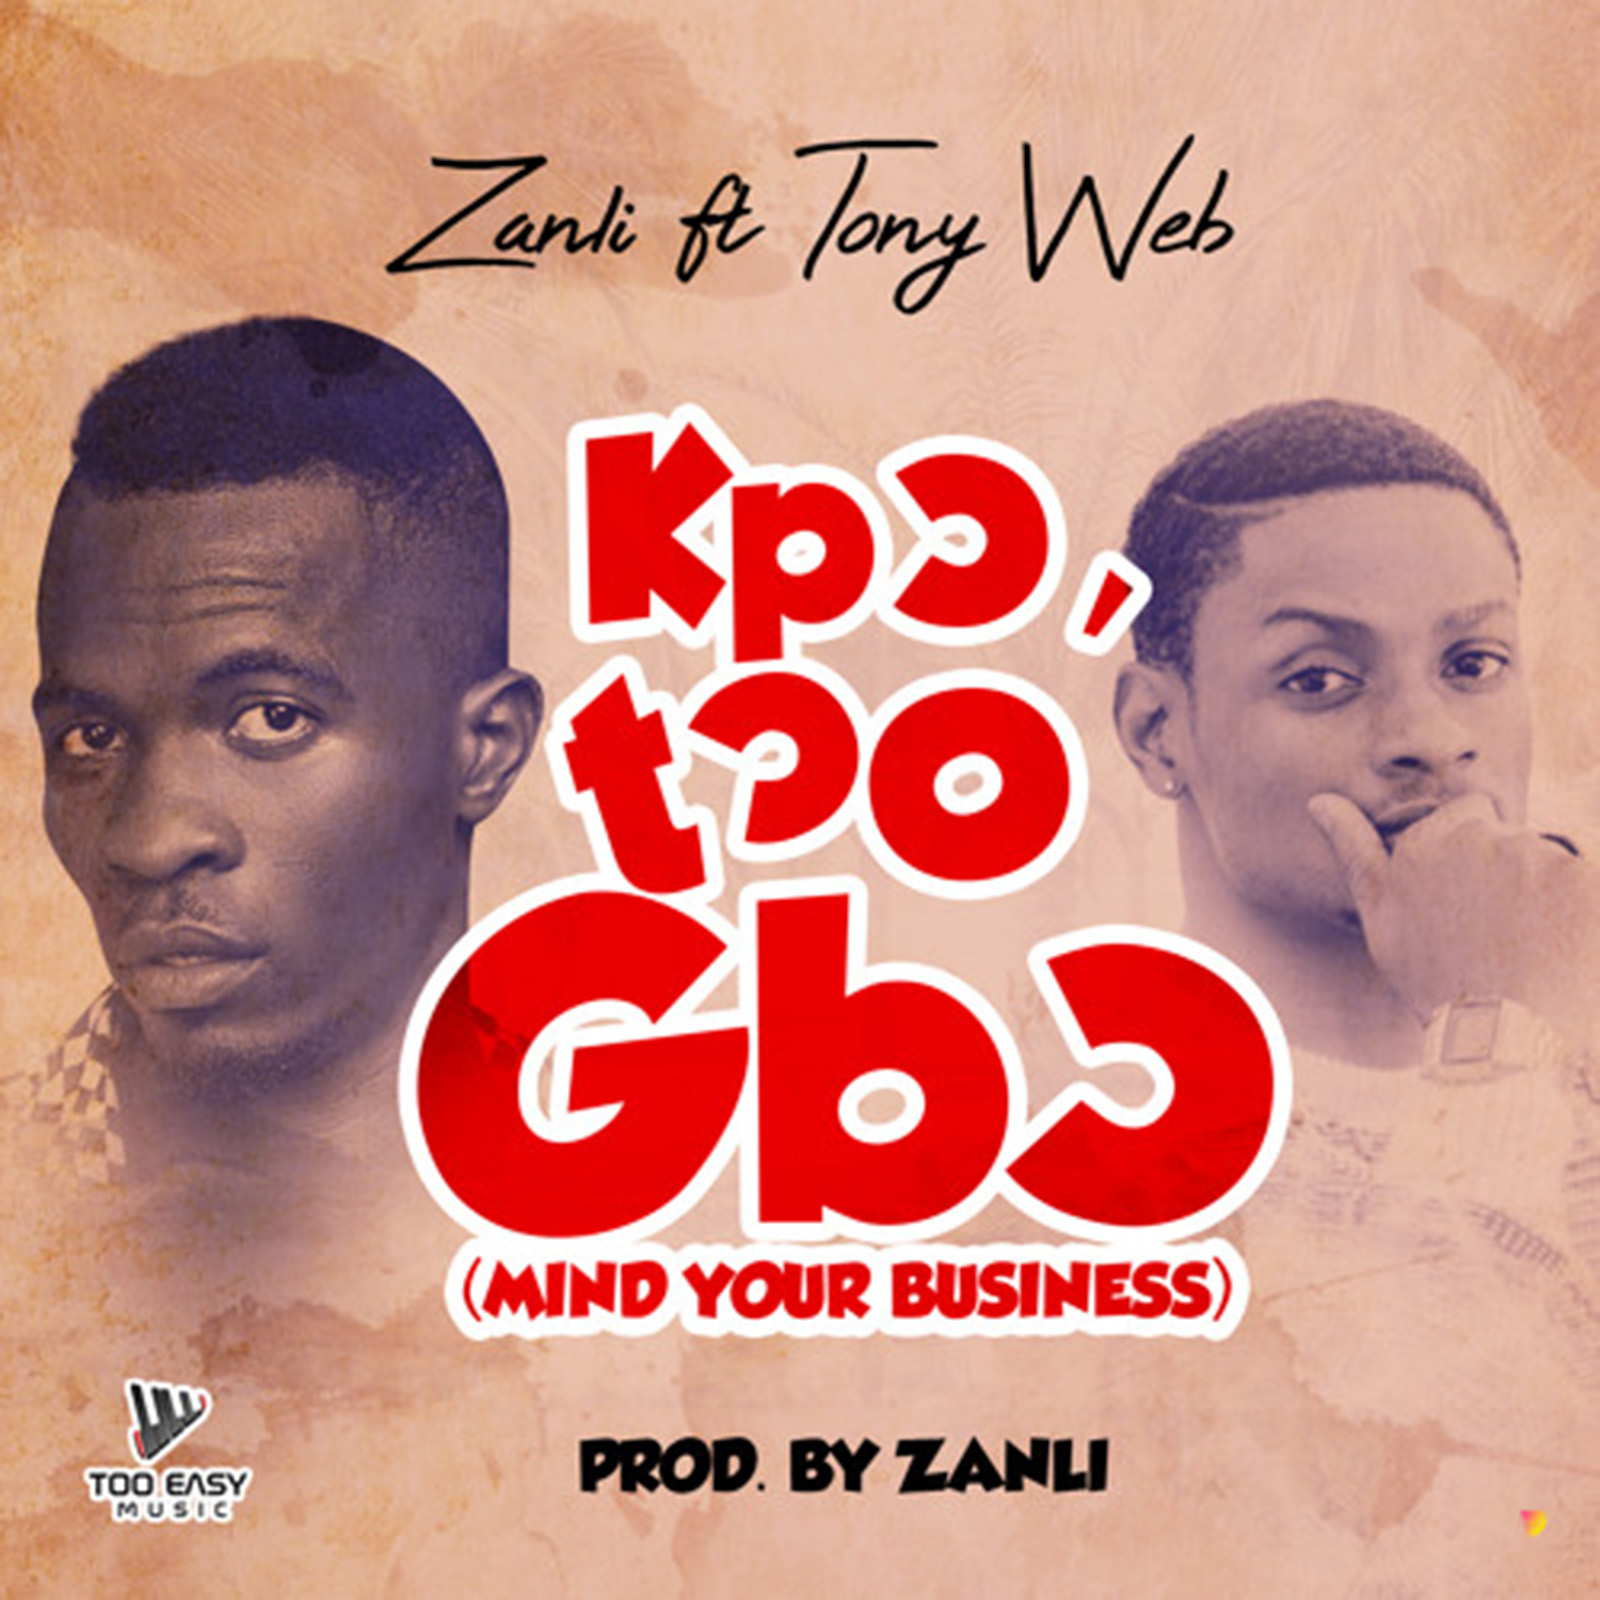 Kpɔtɔ O' Gbɔ (Mind Your Business) by Zanli feat. Tony Web